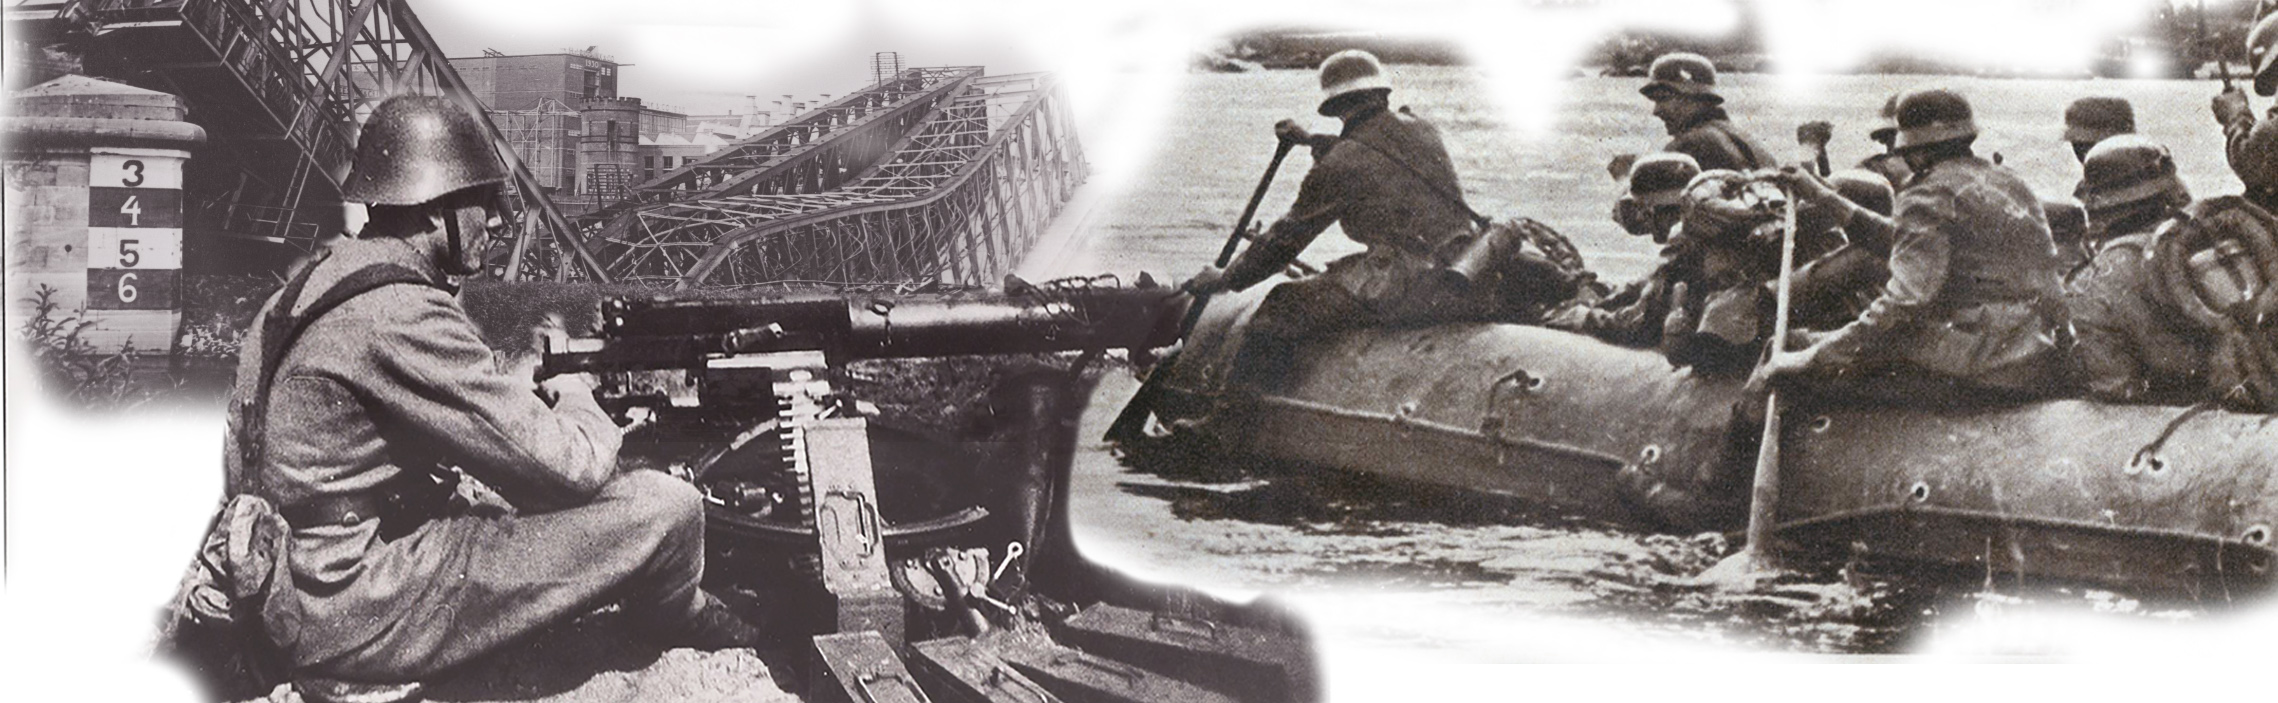 10 mei 1940 16e en 35e regiment infanterie Zutphen IJssellinie - Nederlandse leger probeert Duitsers tegen te houden die in rubberboten de IJssel proberen over te steken